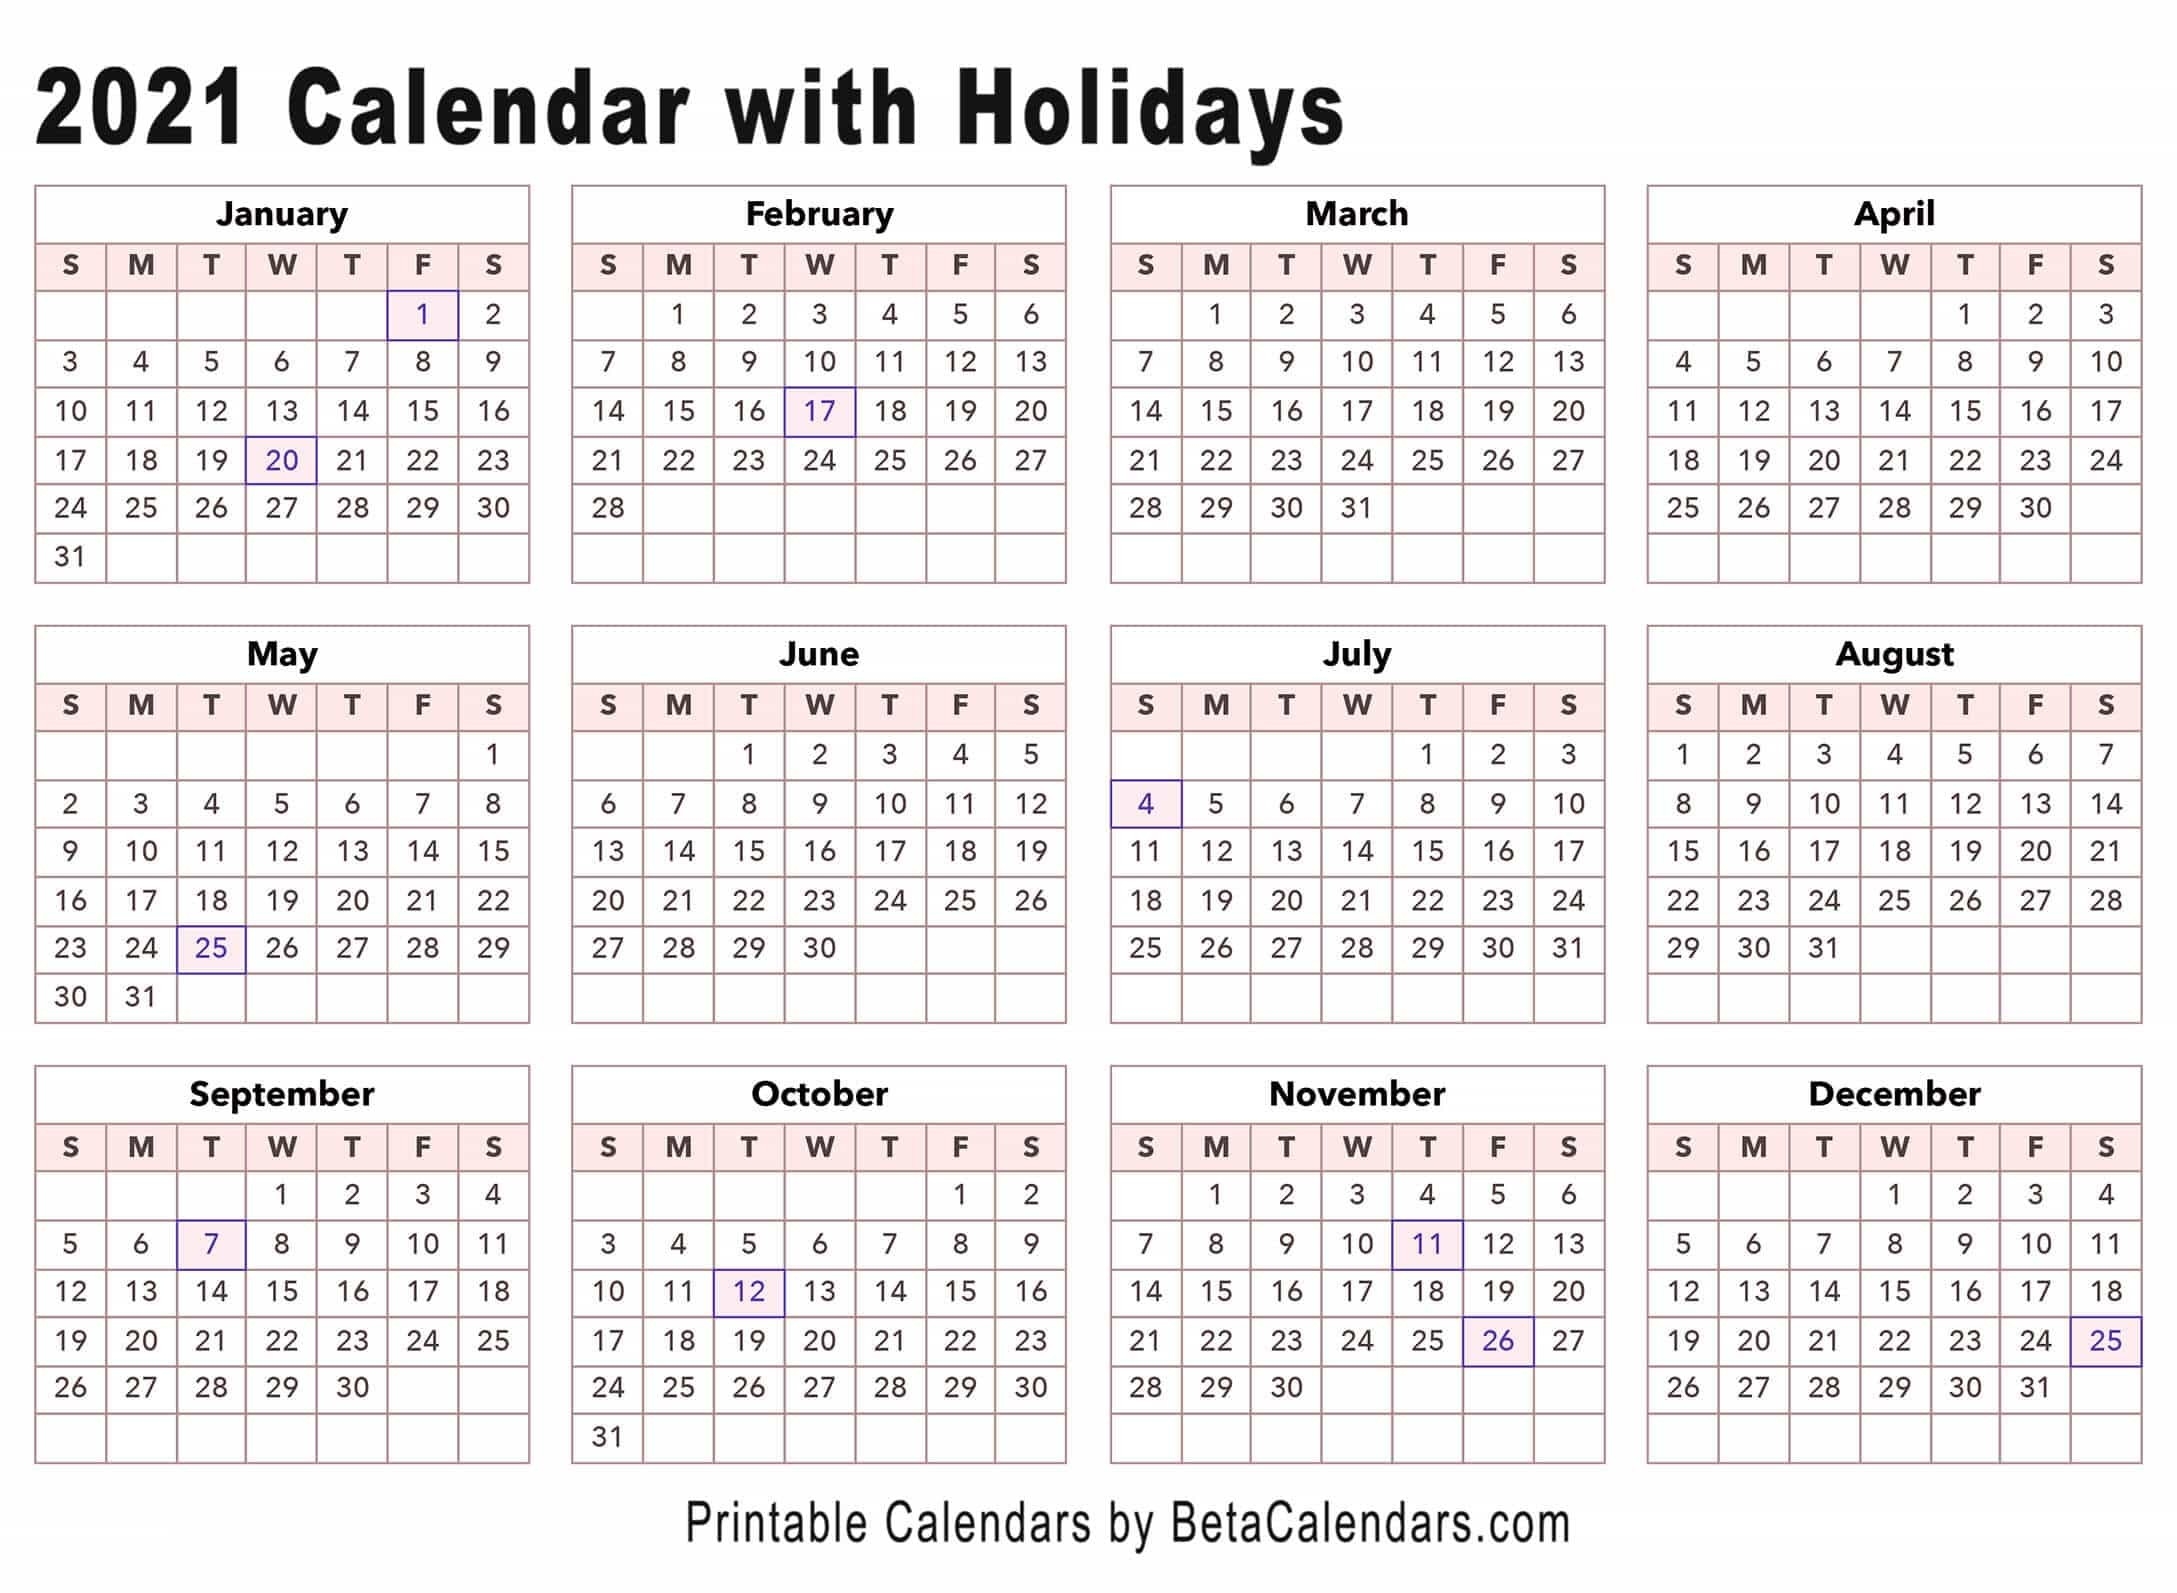 2021 Calendar - Beta Calendars-2021 Calendar With Holidays Printable